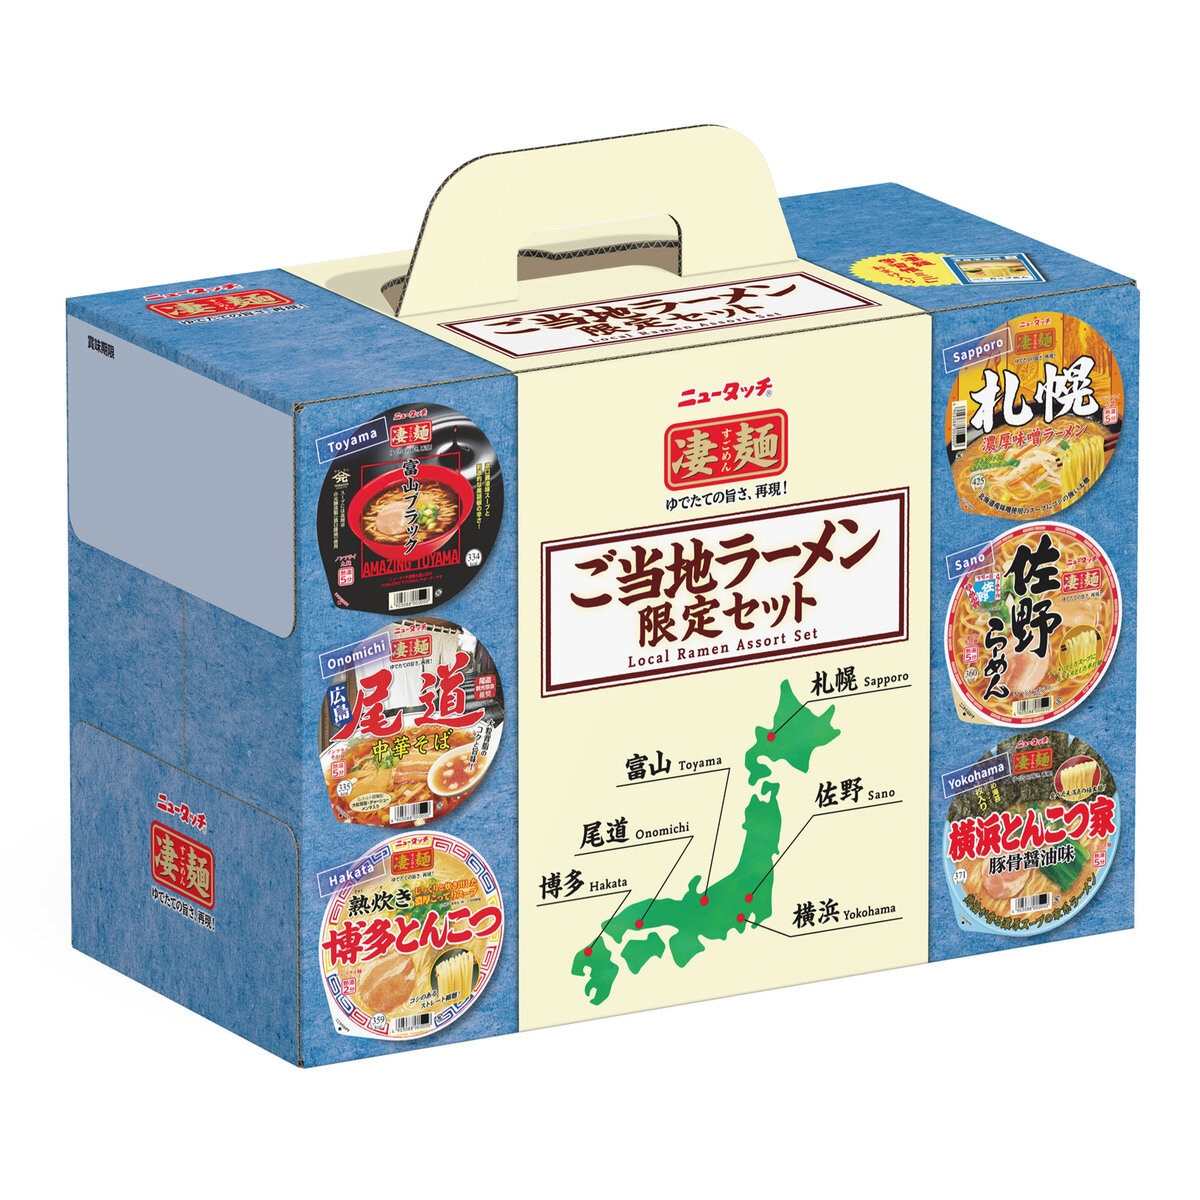 Costco　6食パック　ニュータッチ凄麺ご当地セット　Japan